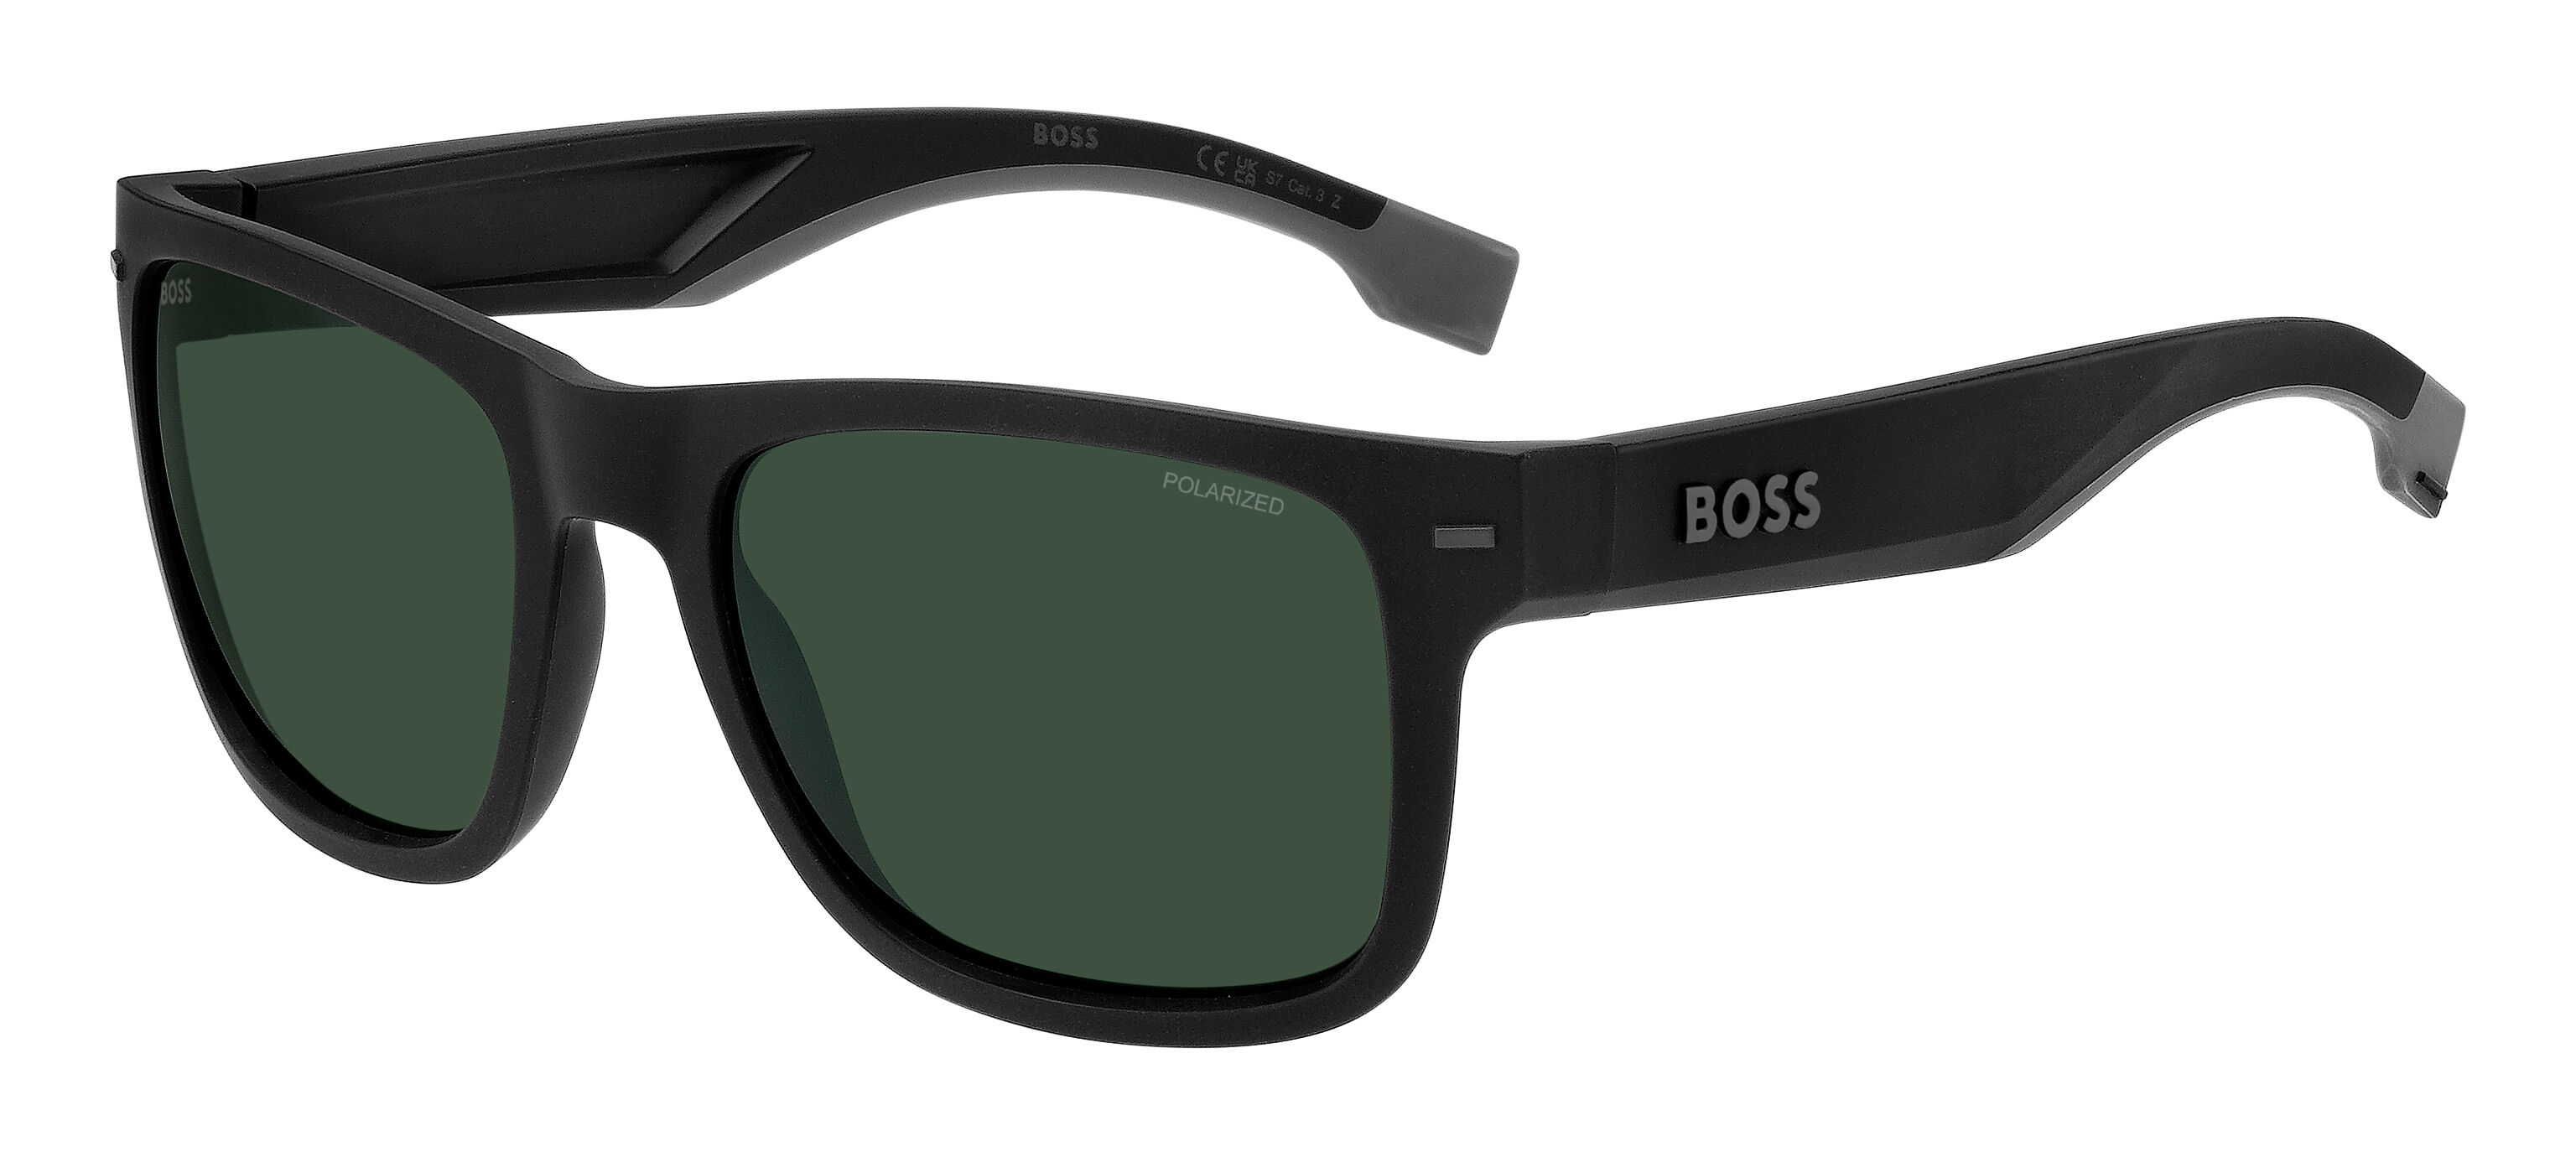 Boss 1496/s O6w 55 Gafas De Sol Negro